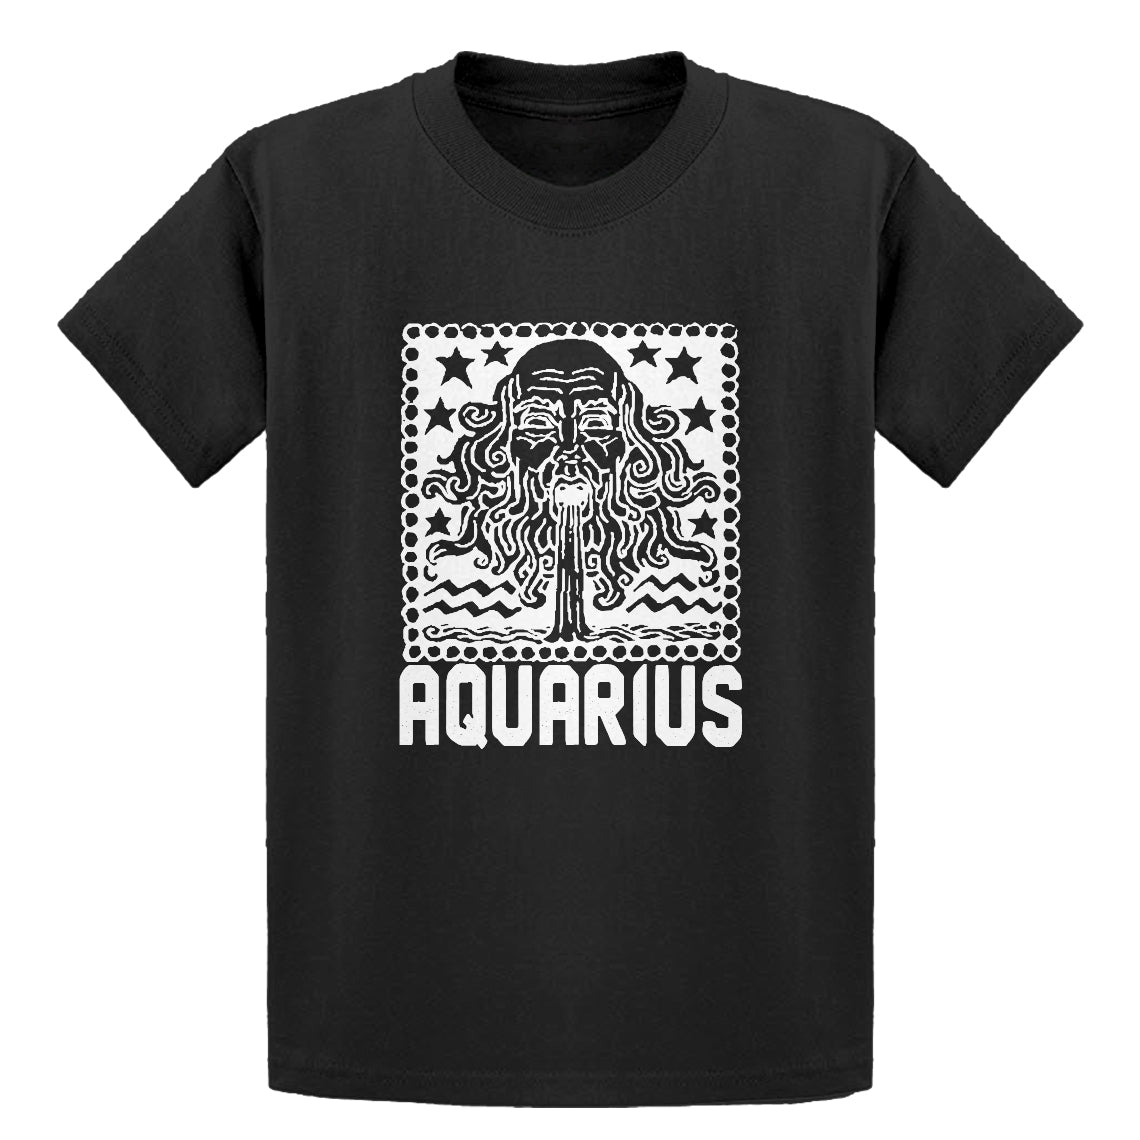 Youth Aquarius Zodiac Astrology Kids T-shirt